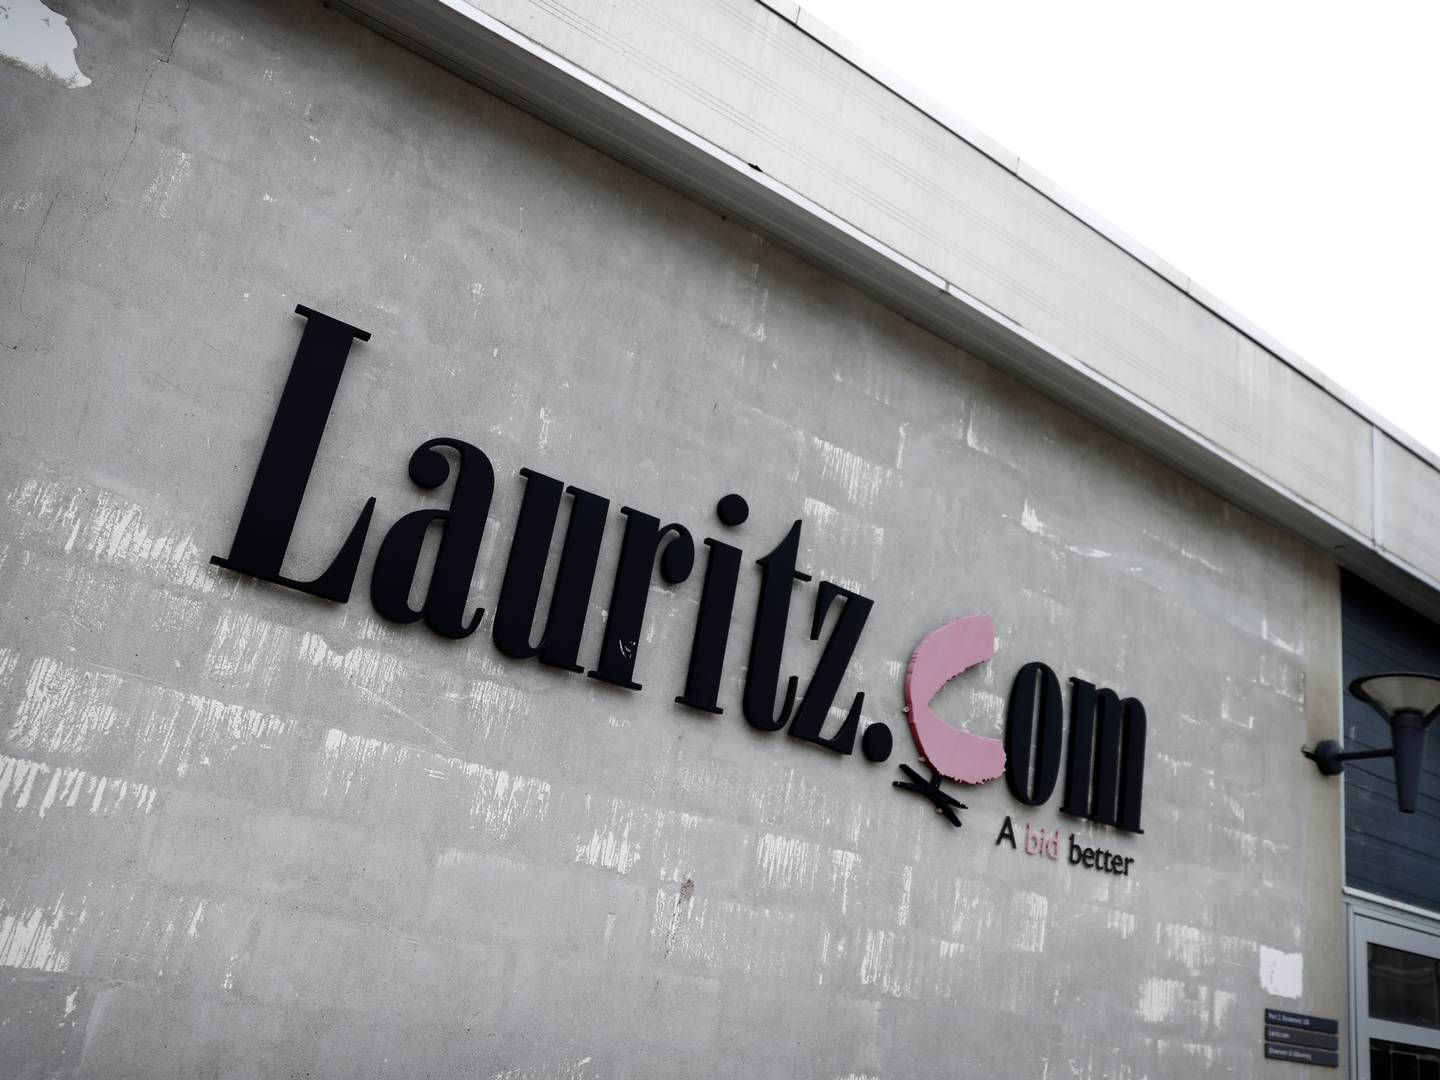 Kurator har tidligere været optimistisk omkring en aftale om overdragelse af aktiverne og aktivteterne i konkursramte Lauritz.com. | Foto: Jens Dresling